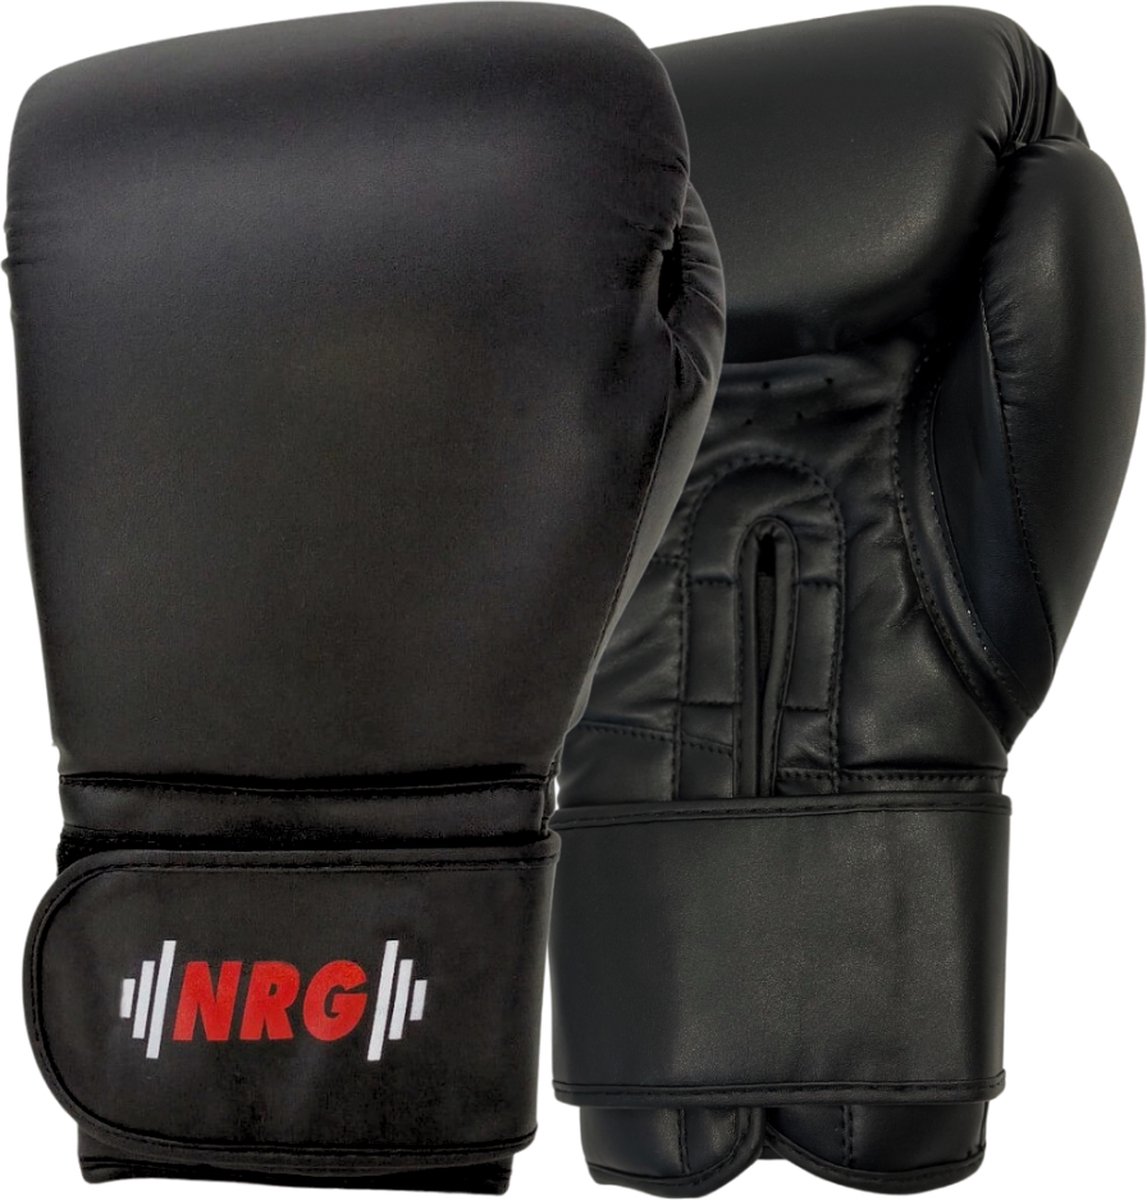 NRG Boxing F4 - Bokshandschoenen - Boxing Gloves - Boksen - Zwart - 16 oz - Training - Sparring - Kunstleer